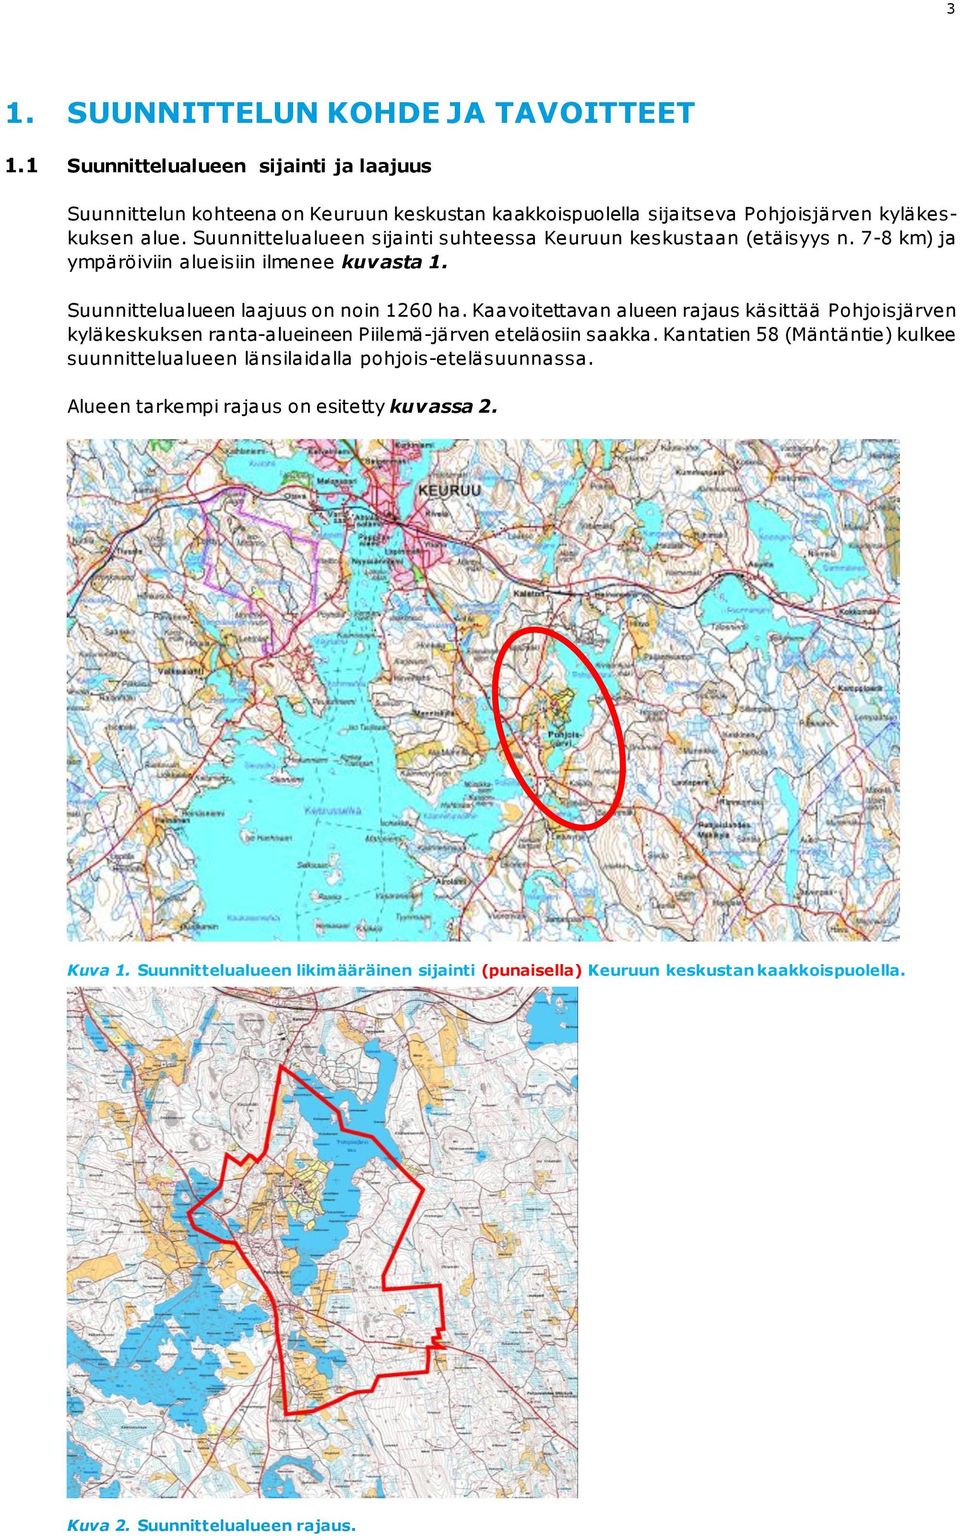 Suunnittelualueen sijainti suhteessa Keuruun keskustaan (etäisyys n. 7-8 km) ja ympäröiviin alueisiin ilmenee kuvasta 1. Suunnittelualueen laajuus on noin 1260 ha.